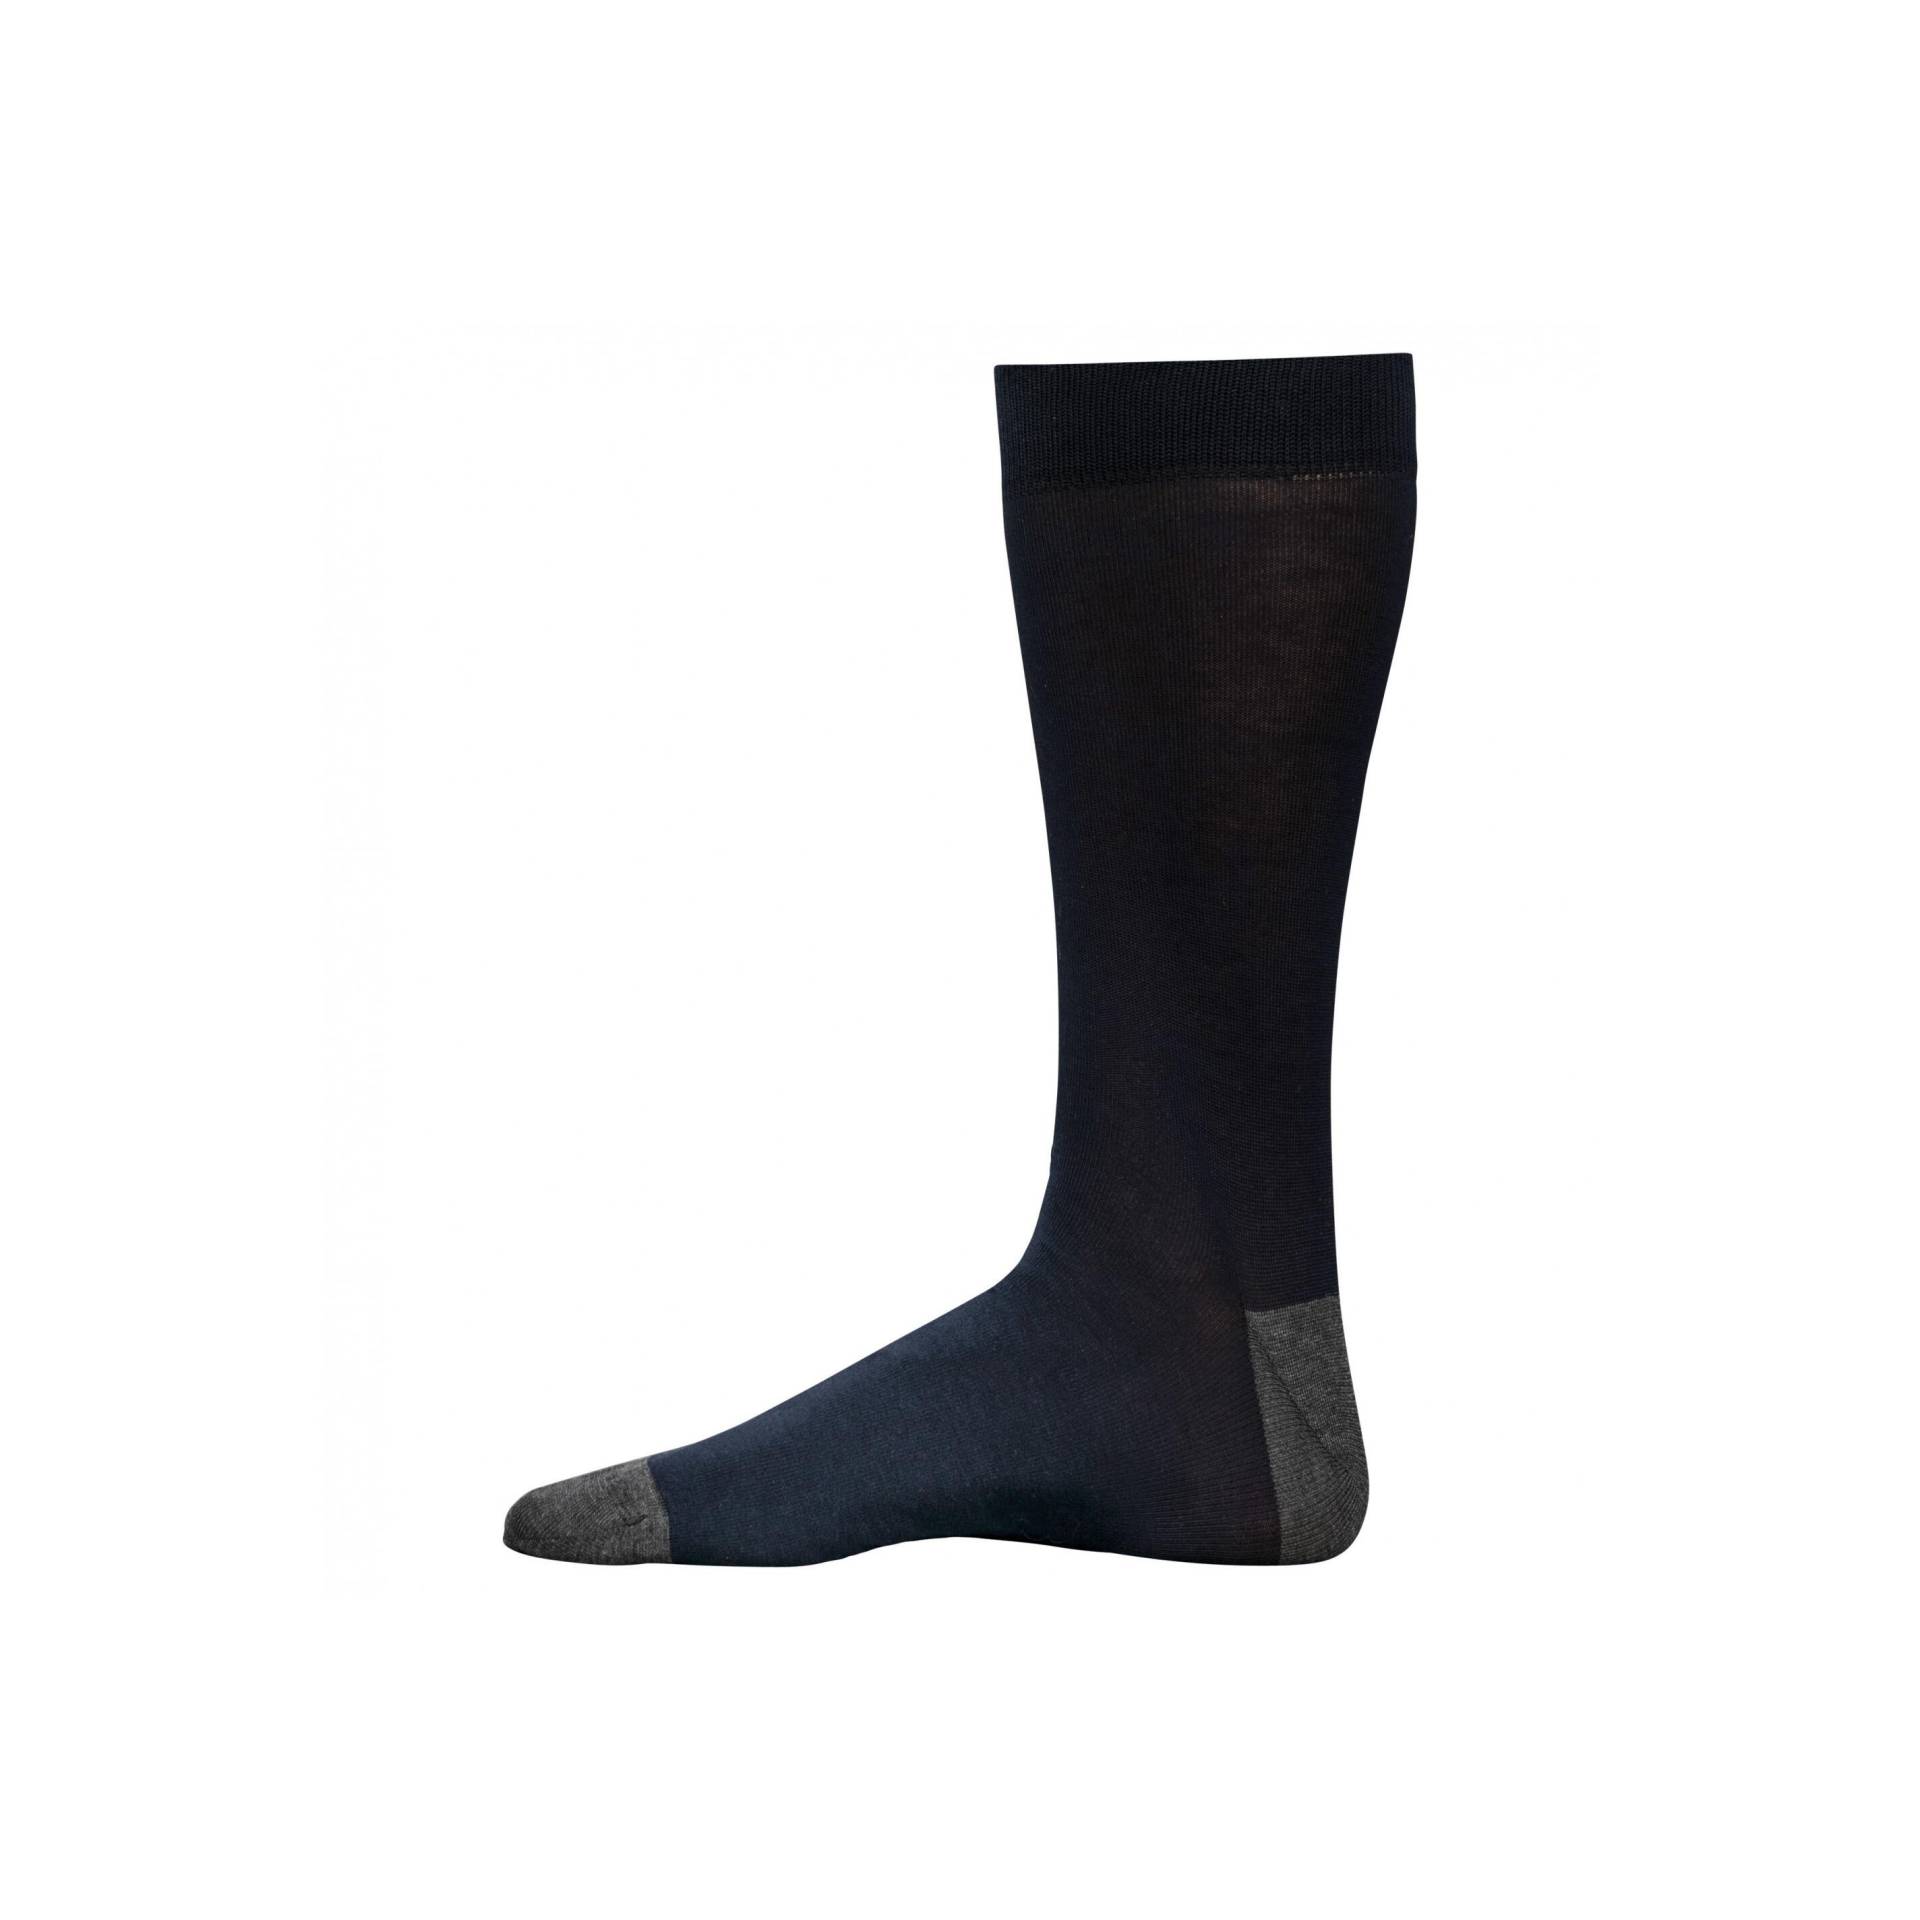 Halbhohe Socken Aus Mercerisierter Baumwolle Origine France Garantie Herren  43-46 von Kariban